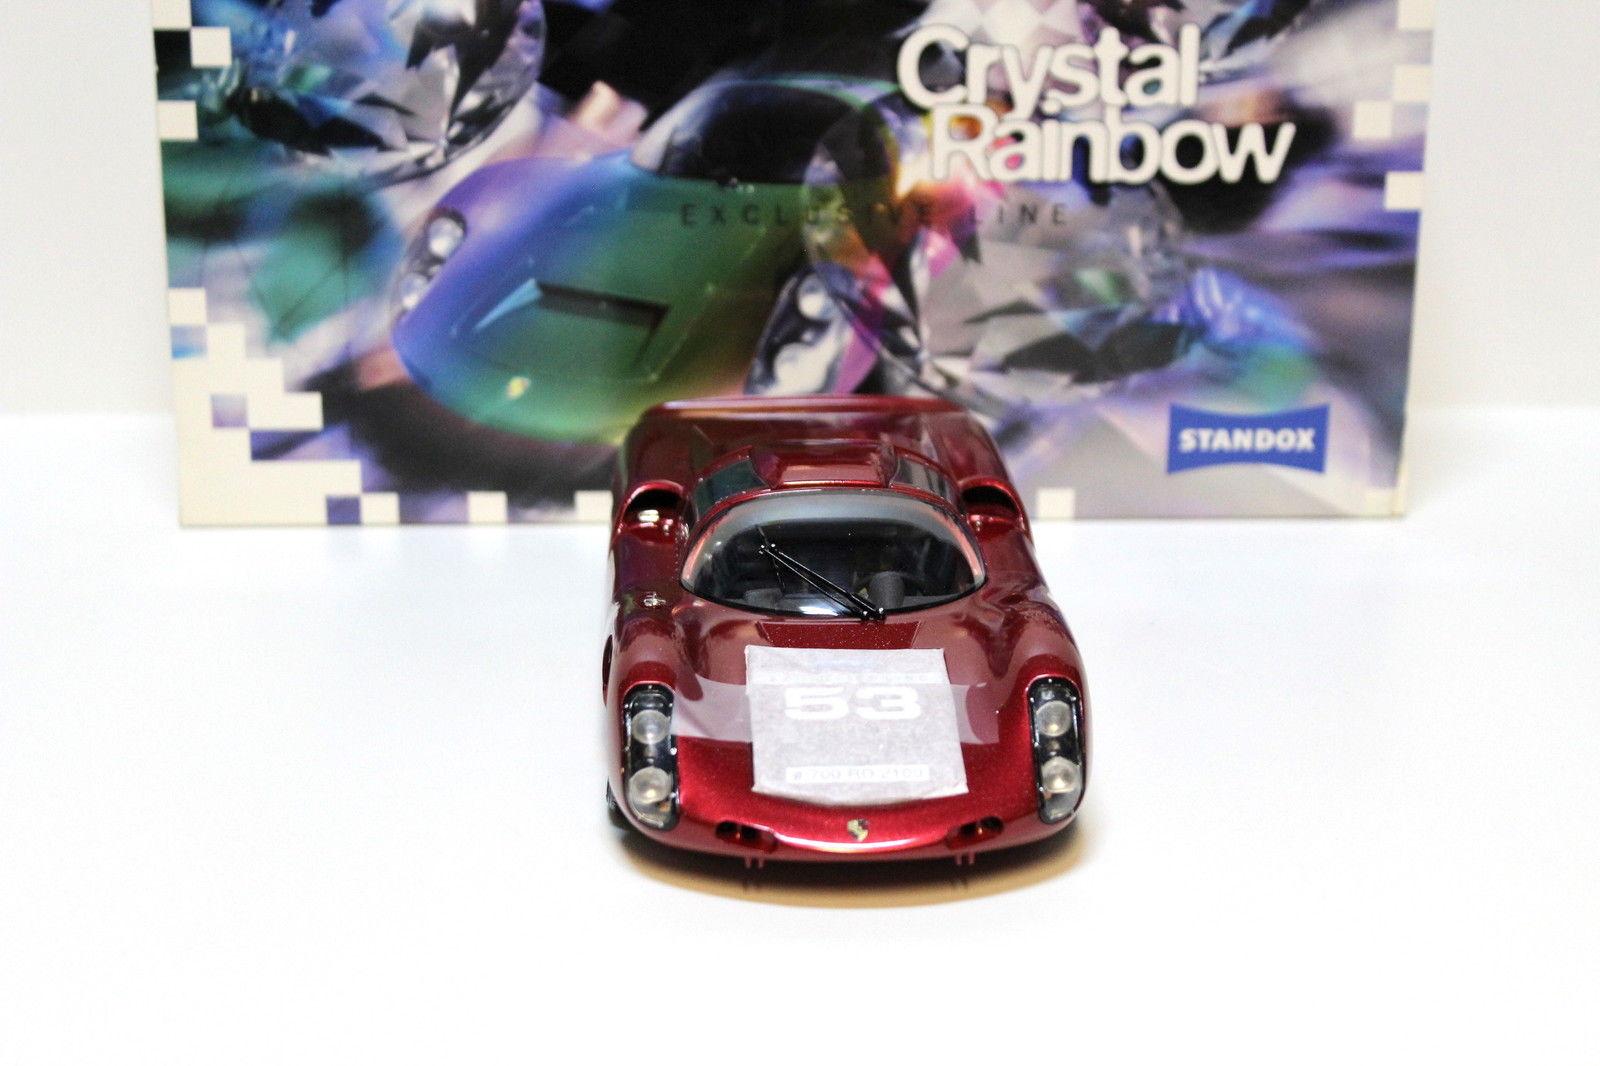 1:18 EXOTO Porsche 910 "Crystal Rainbow" STANDOX red #53 